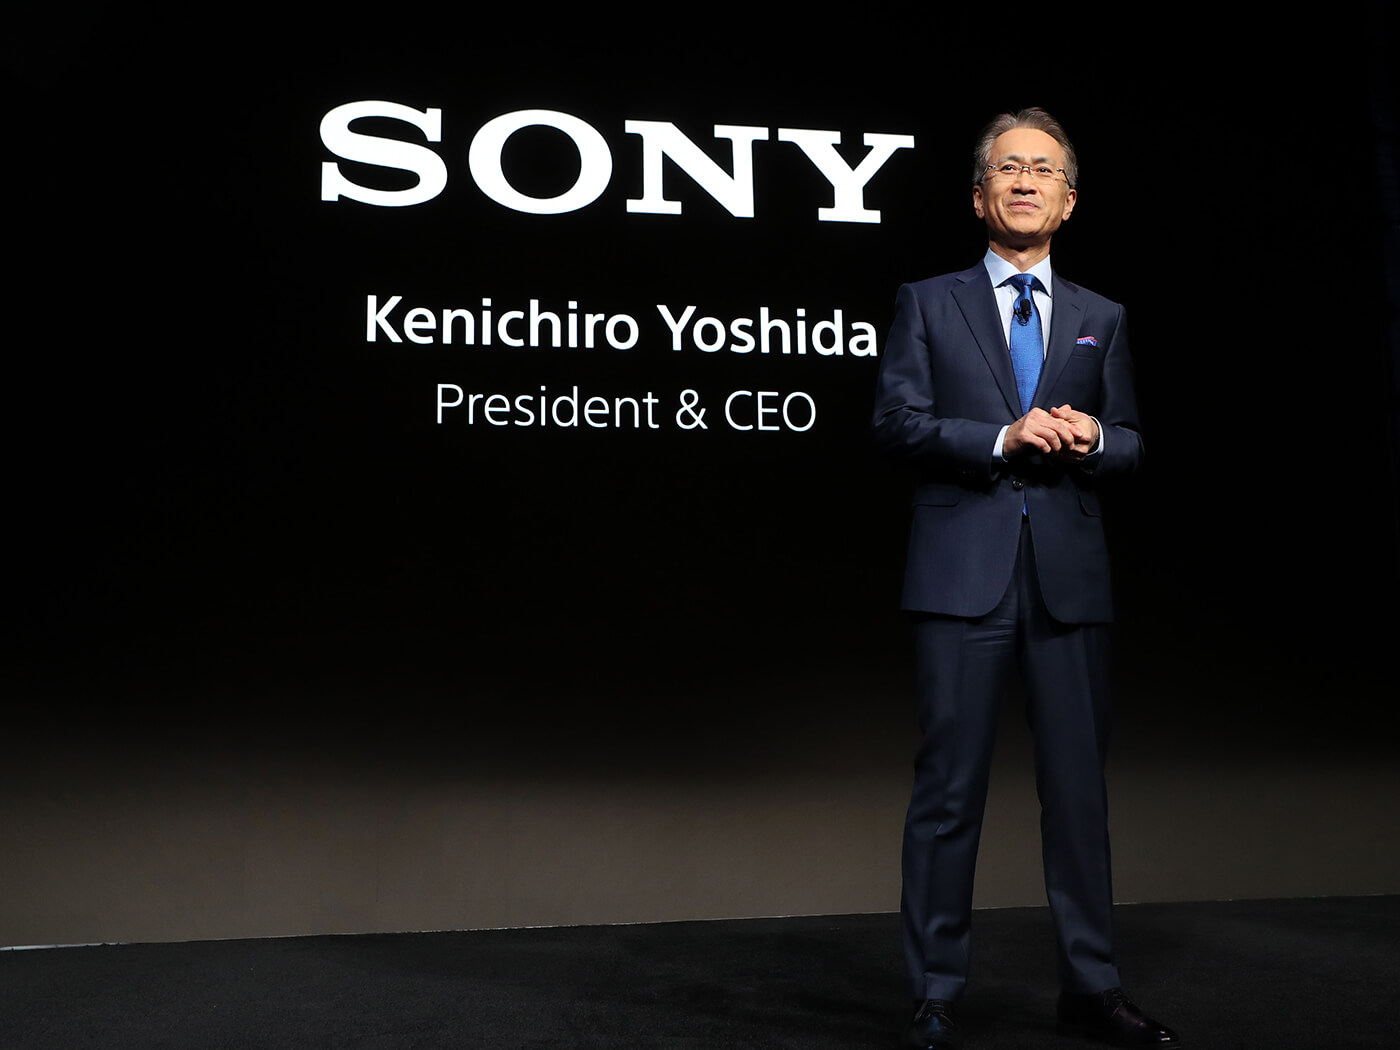 Sony Kenichiro Yoshida